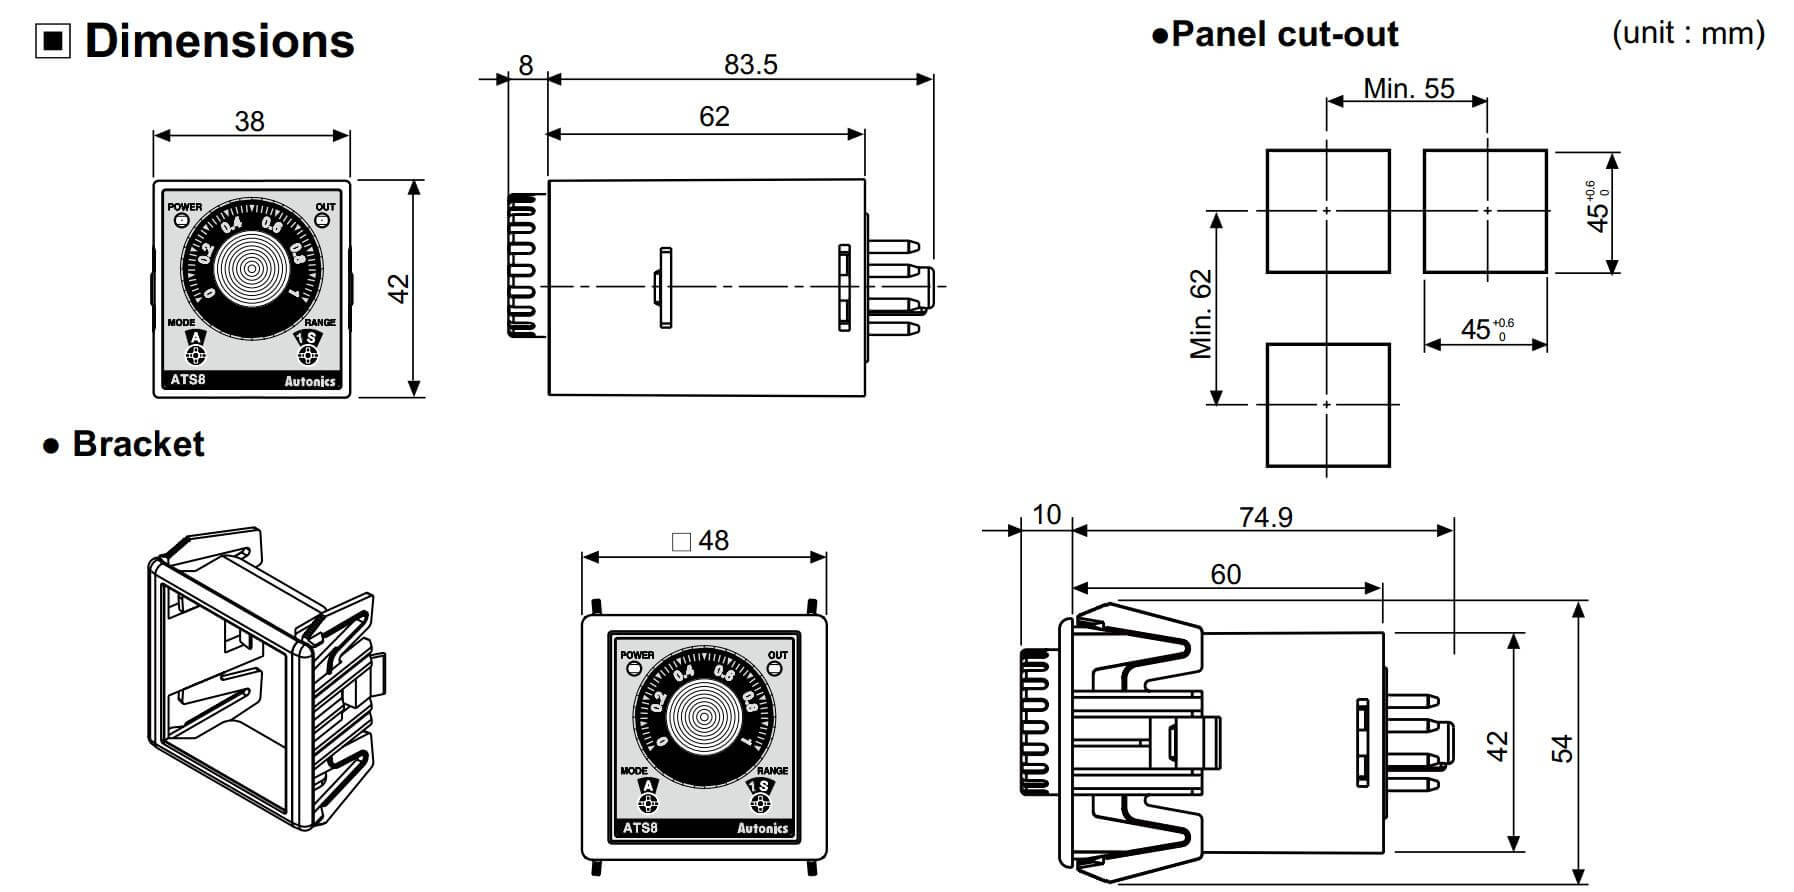 Cấu tạo và Kích thước Autonics ATS11-41D: Bộ định thời gian (Timer)